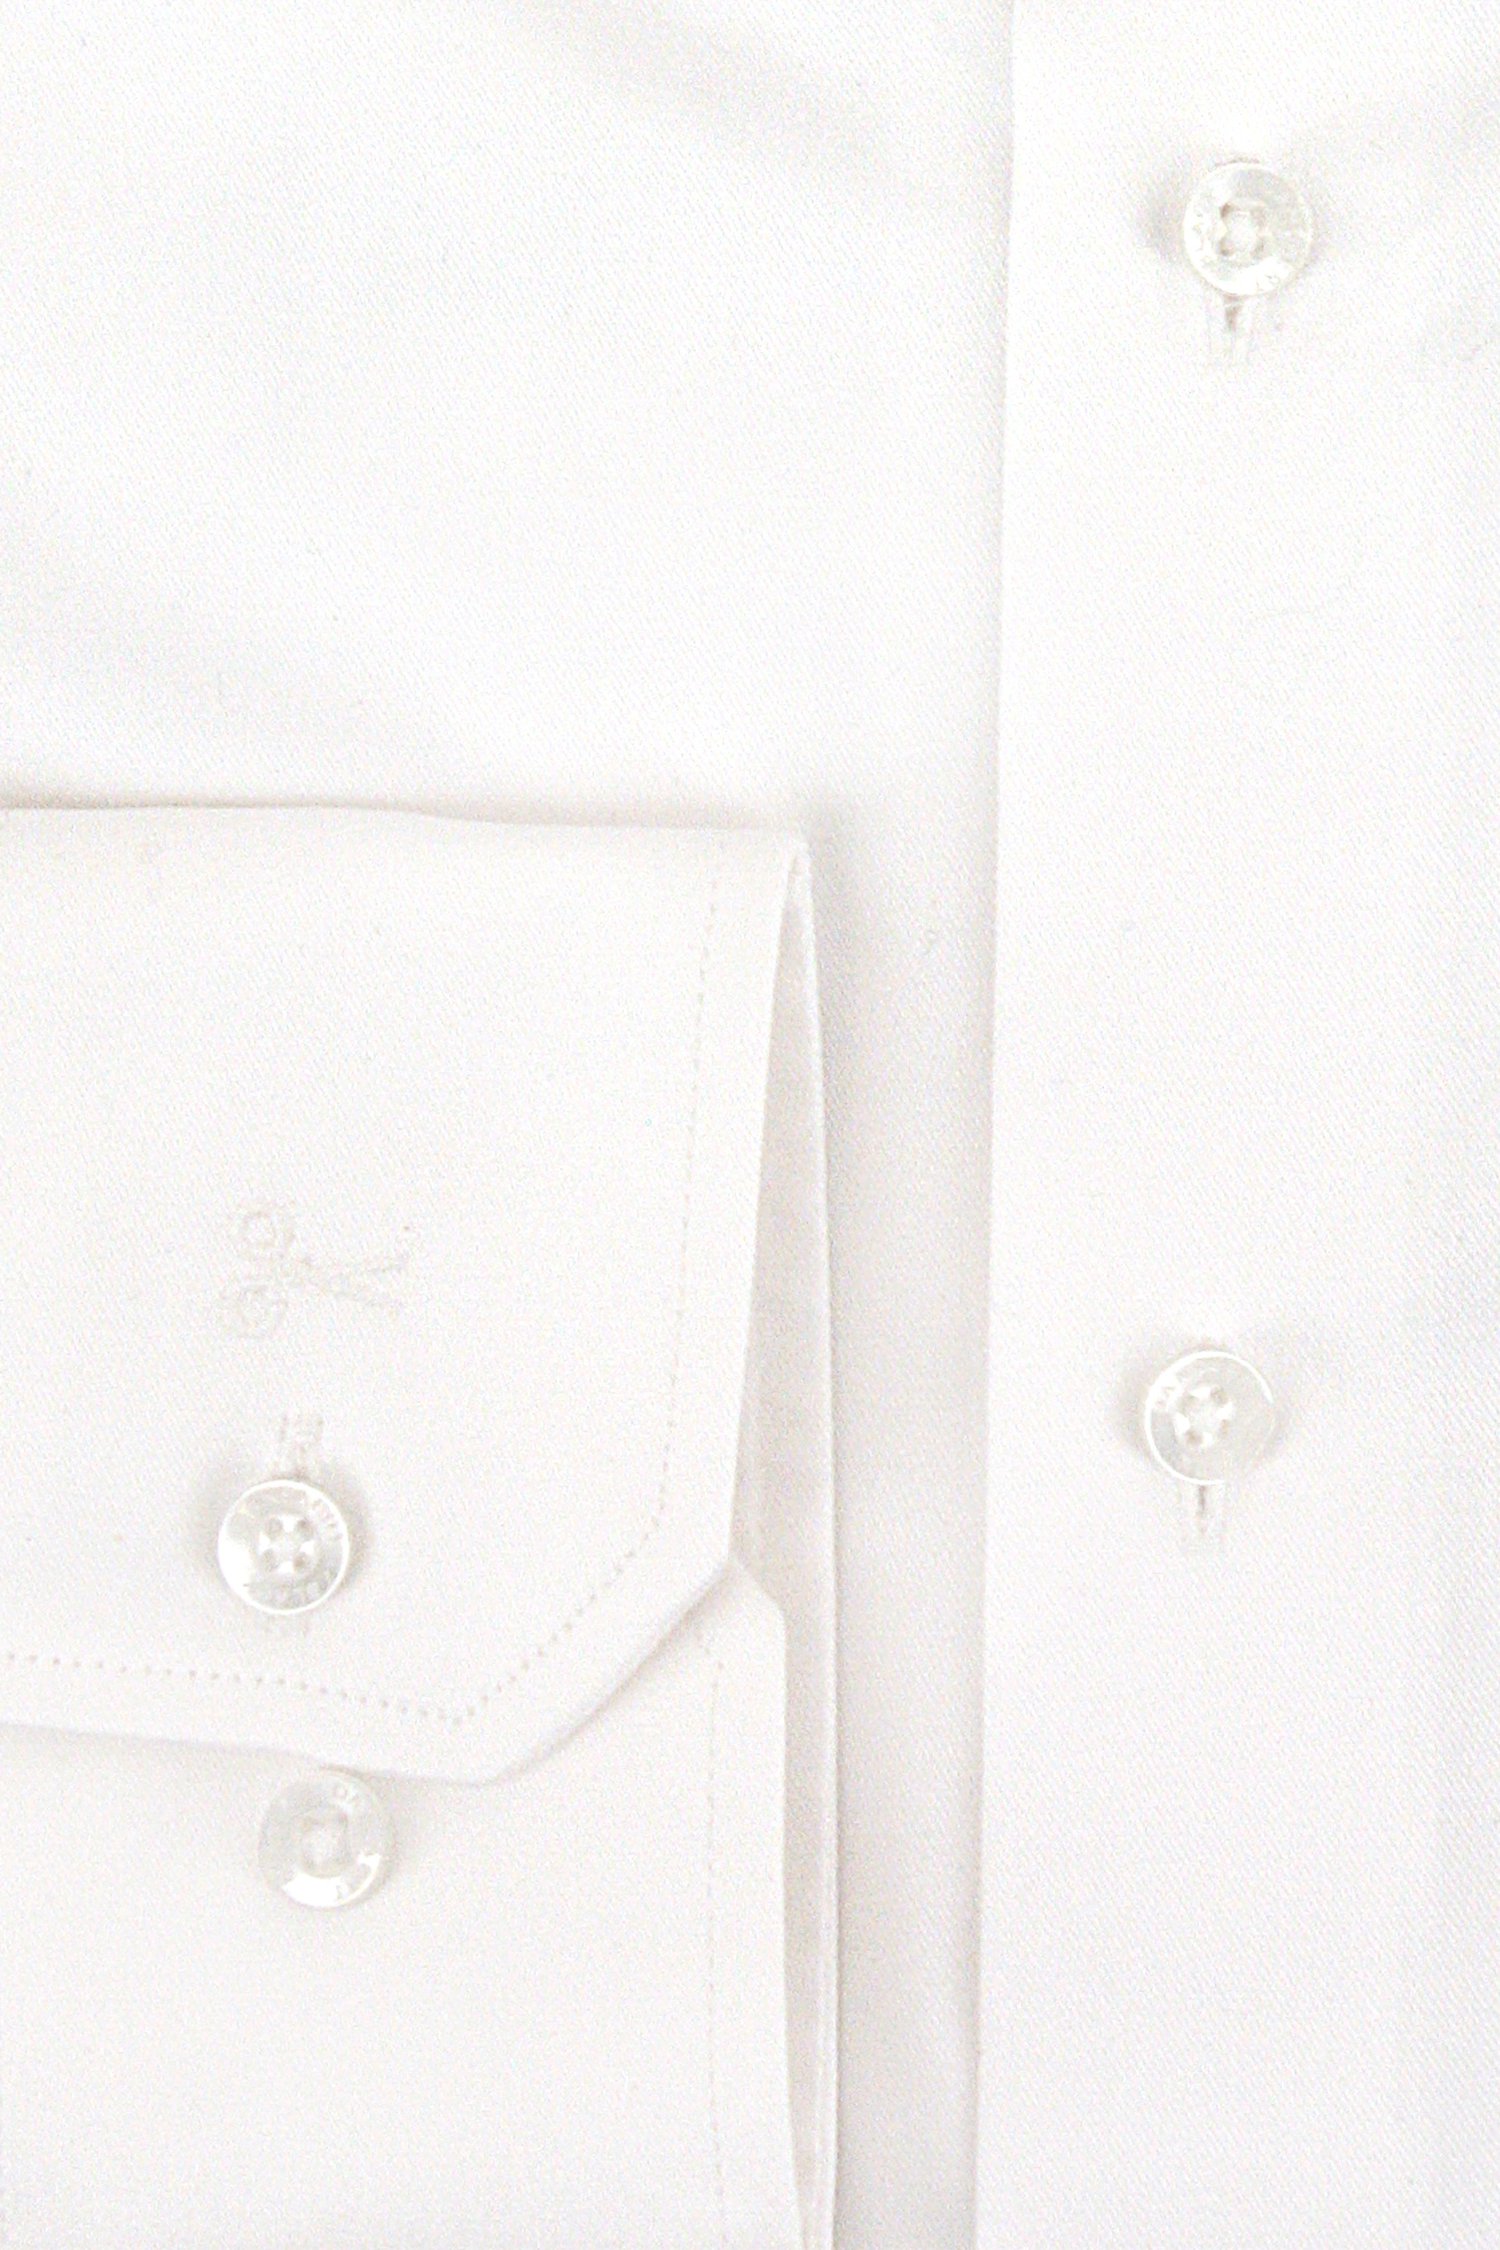 Wit hemd - comfort fit van Dansaert Black voor Heren